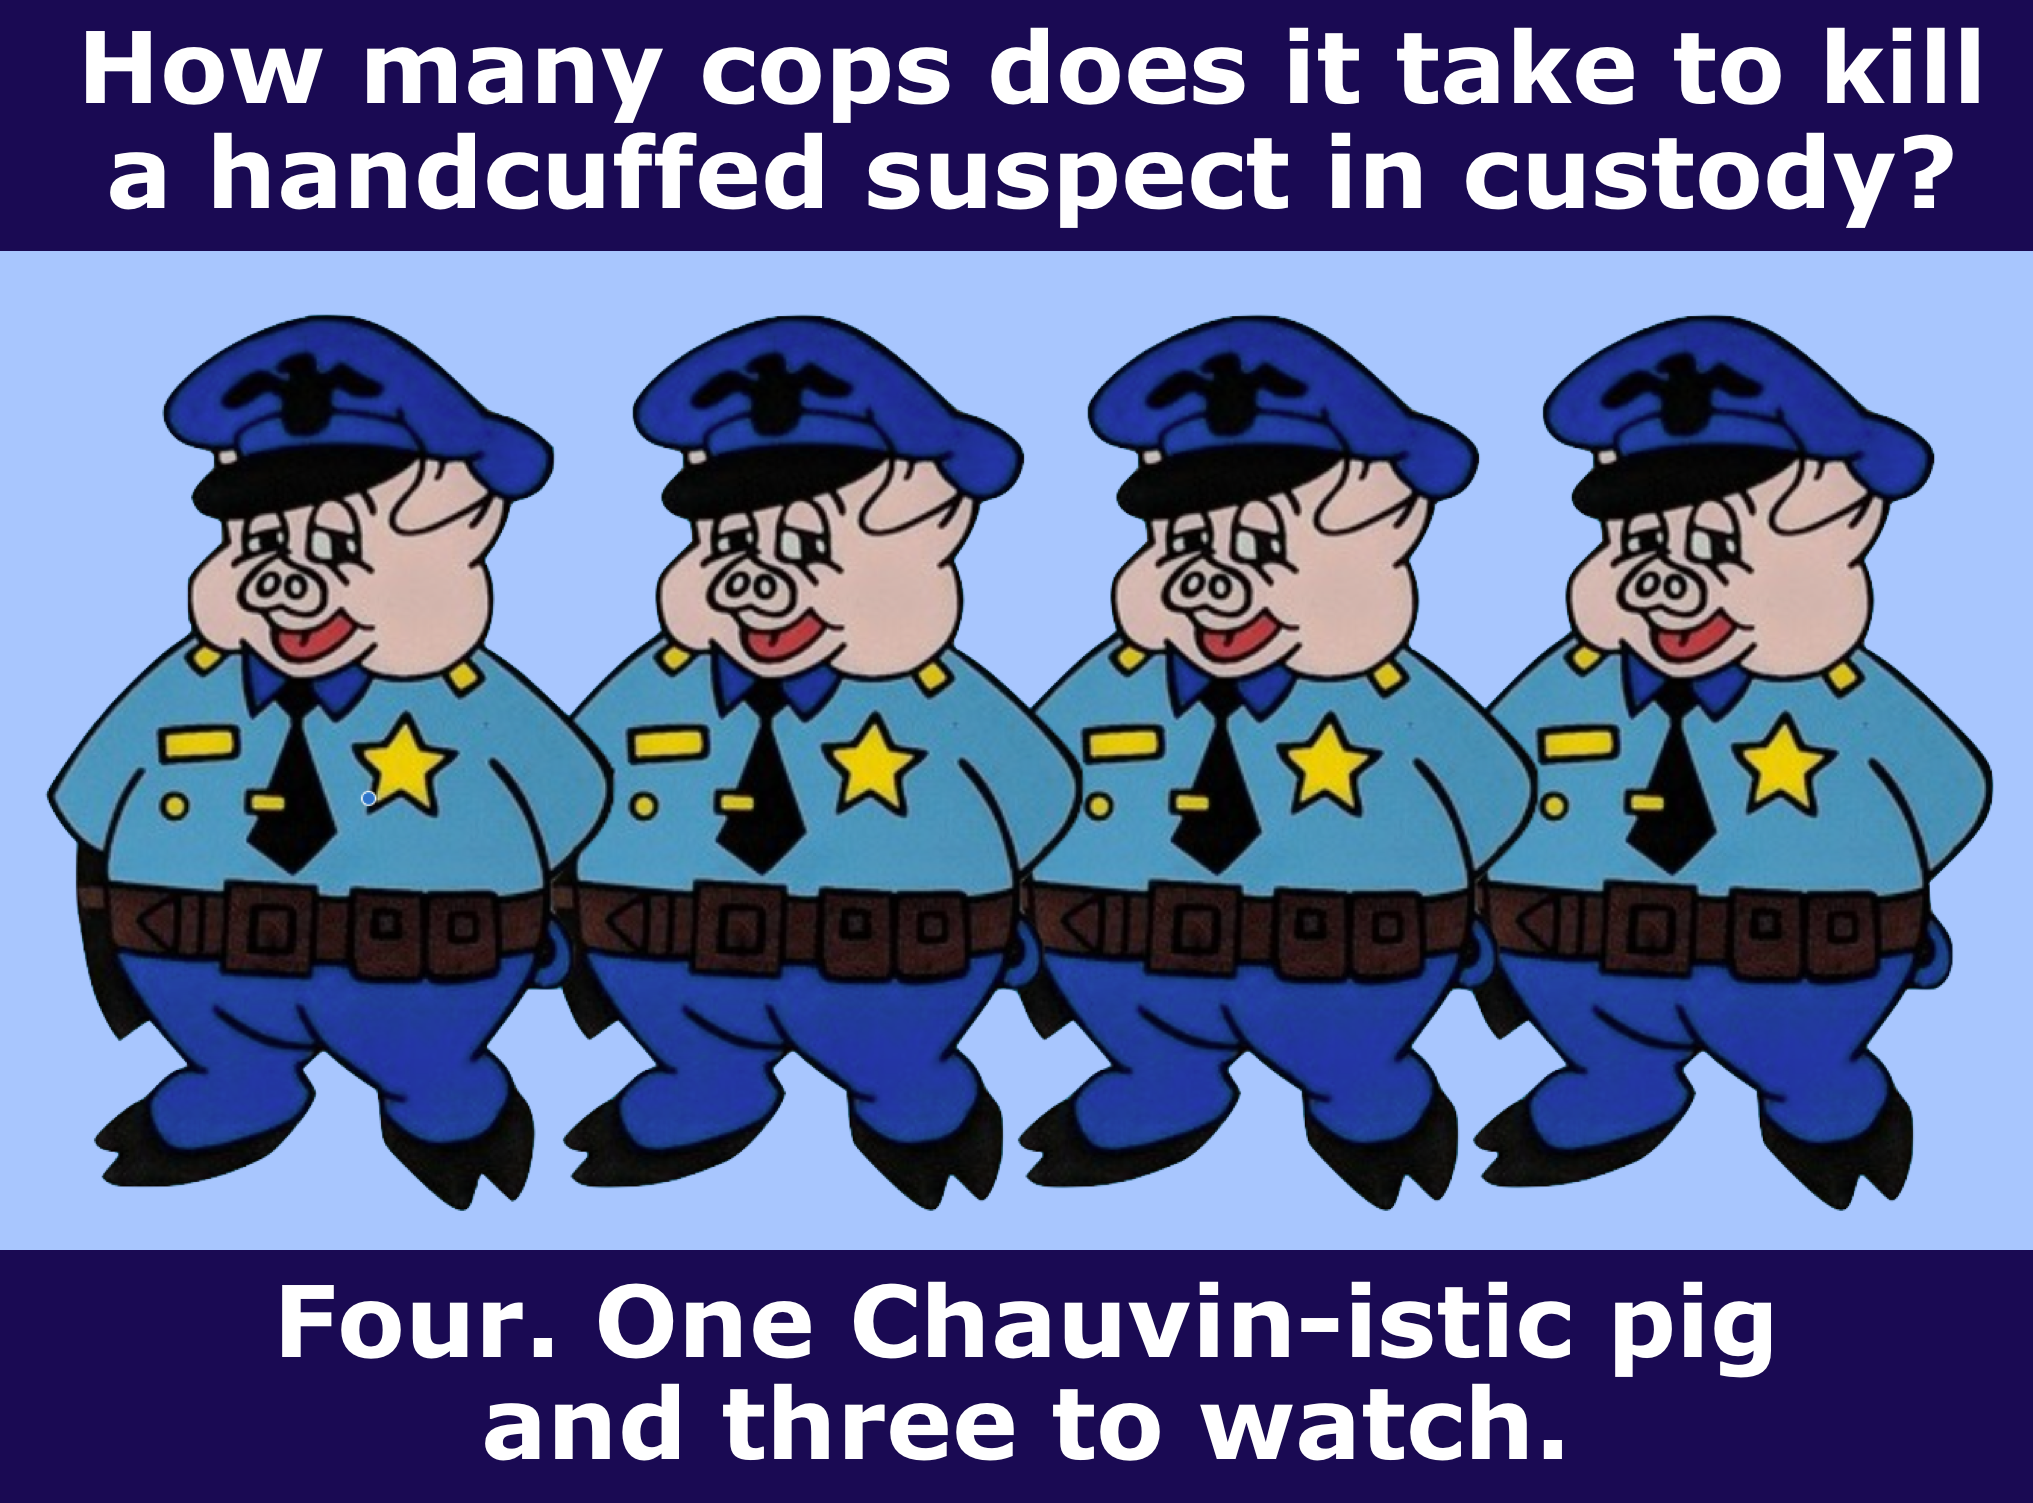 four little pigs joke Blank Meme Template